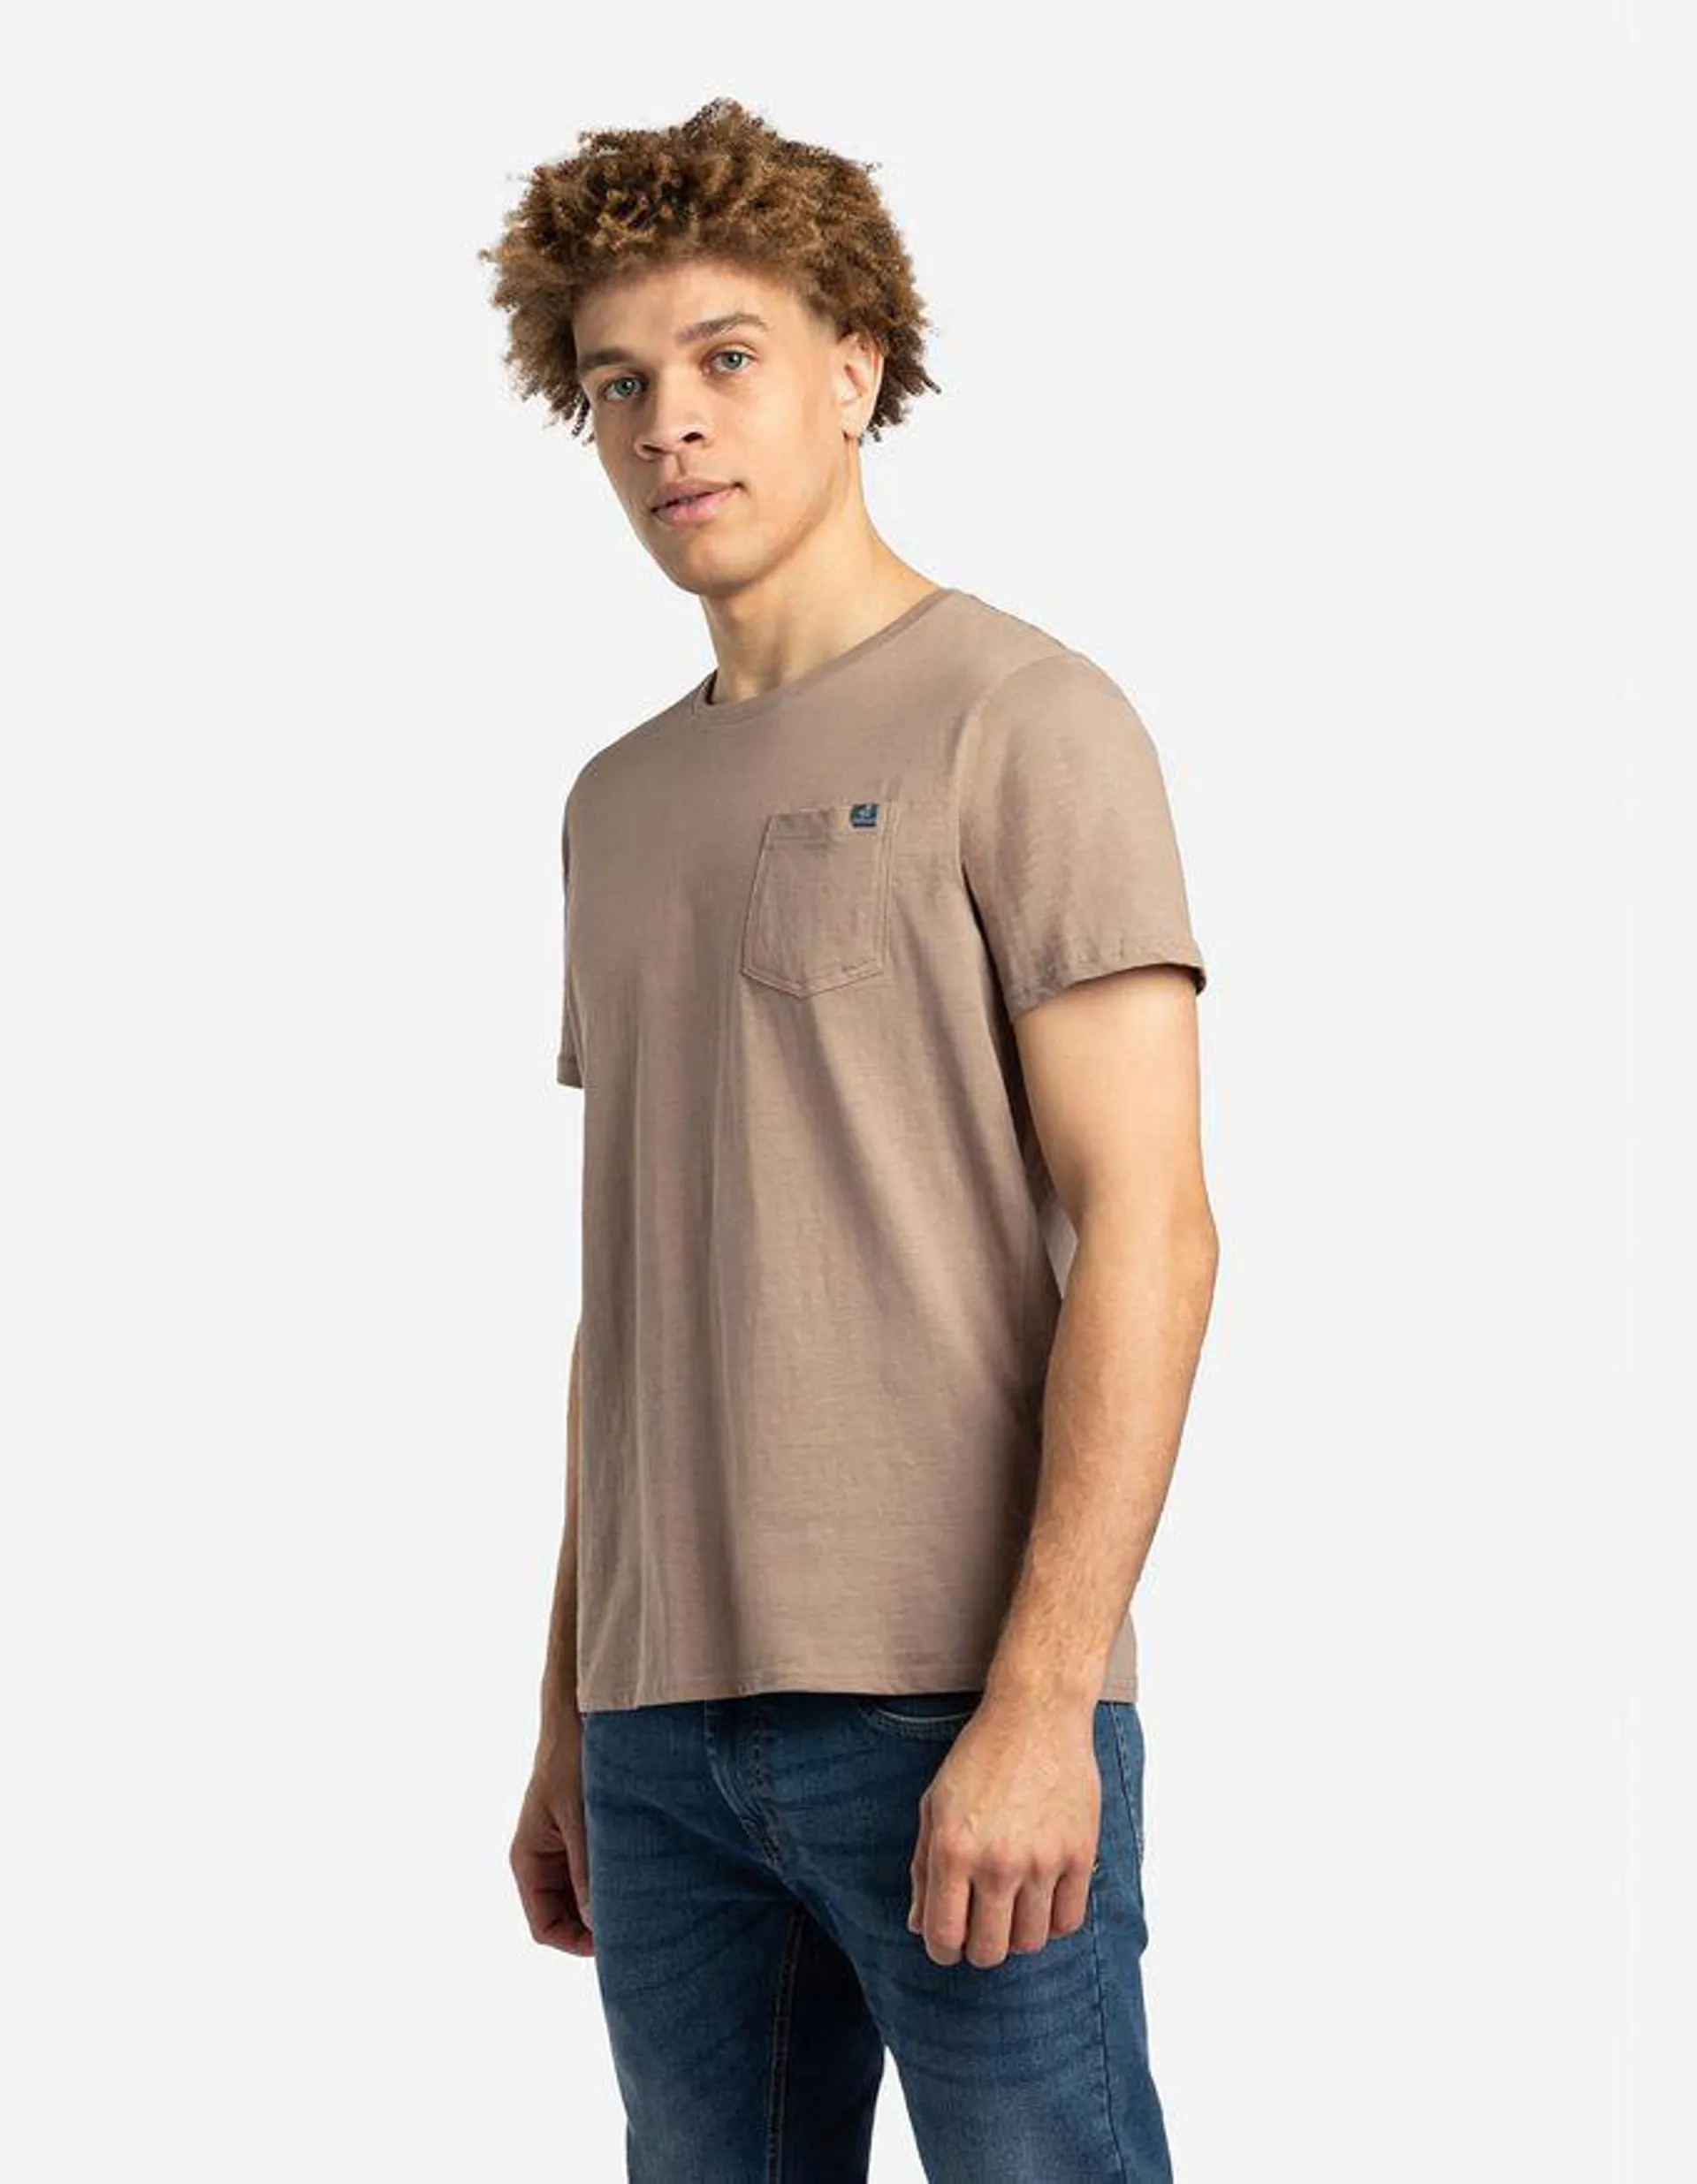 T-shirt - Tasca sul petto - marrone chiaro